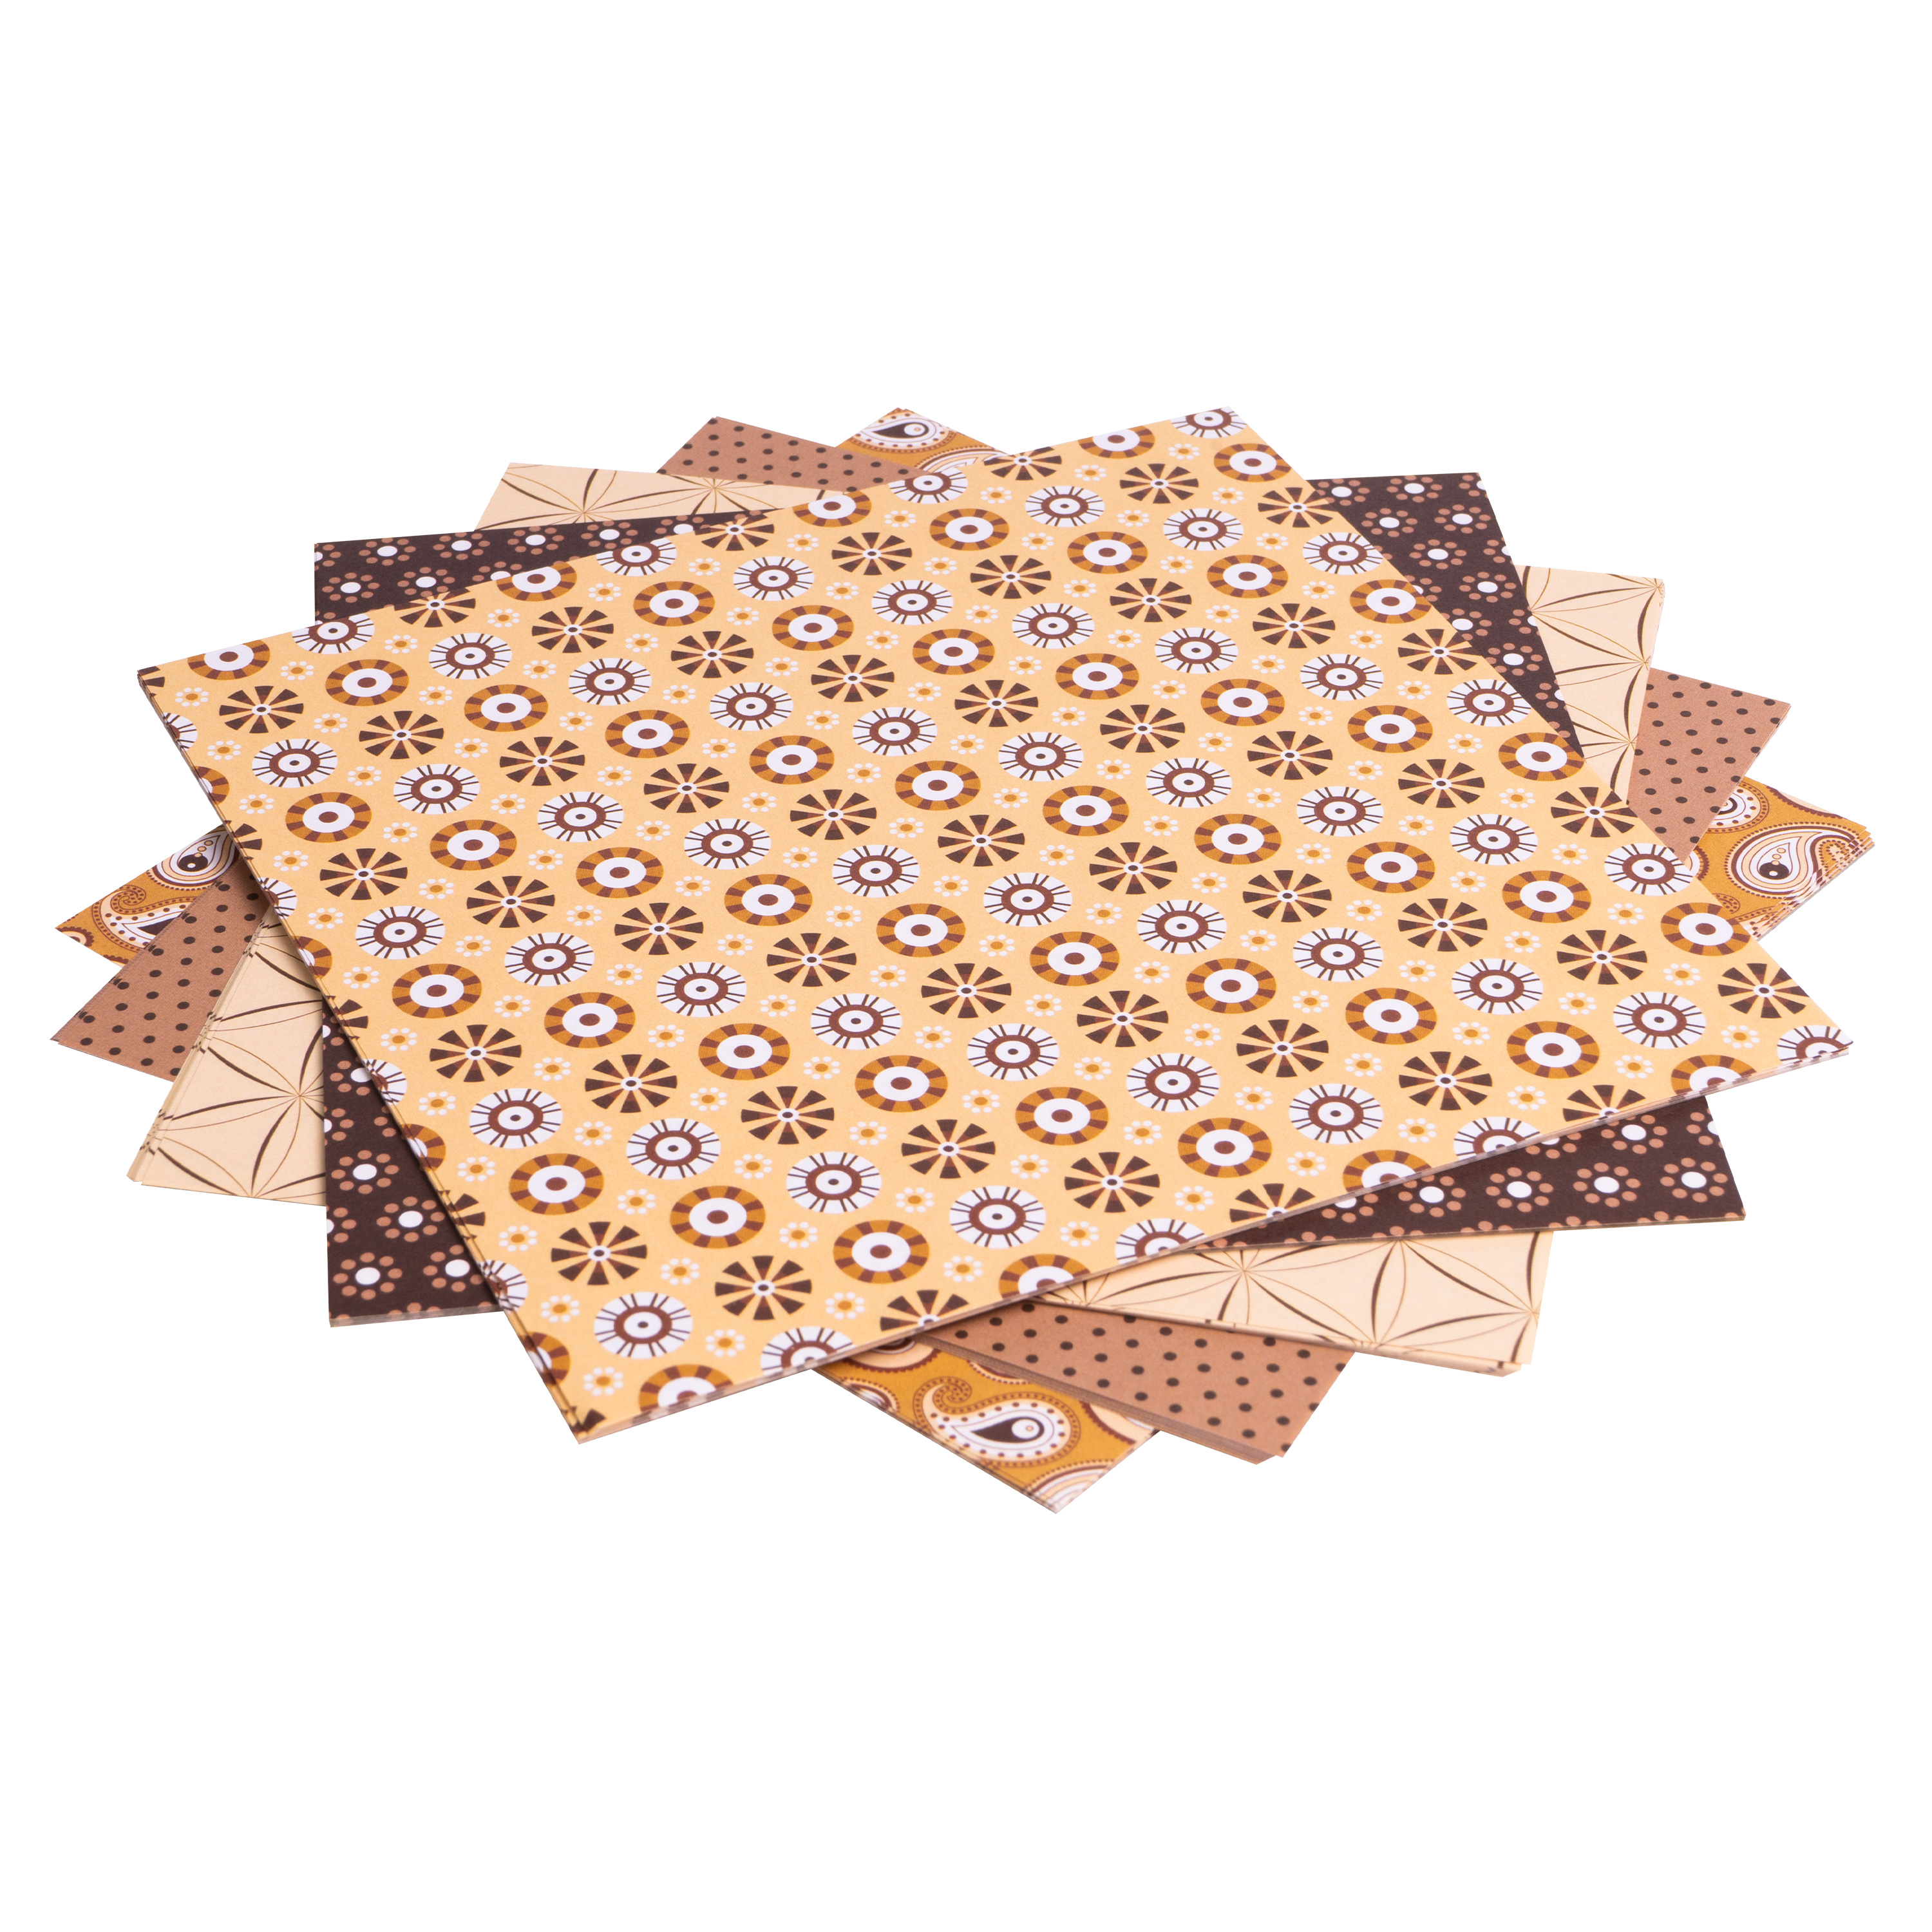 Origami Motiv-Faltblätter 'Basics', 20 x 20 cm, braun